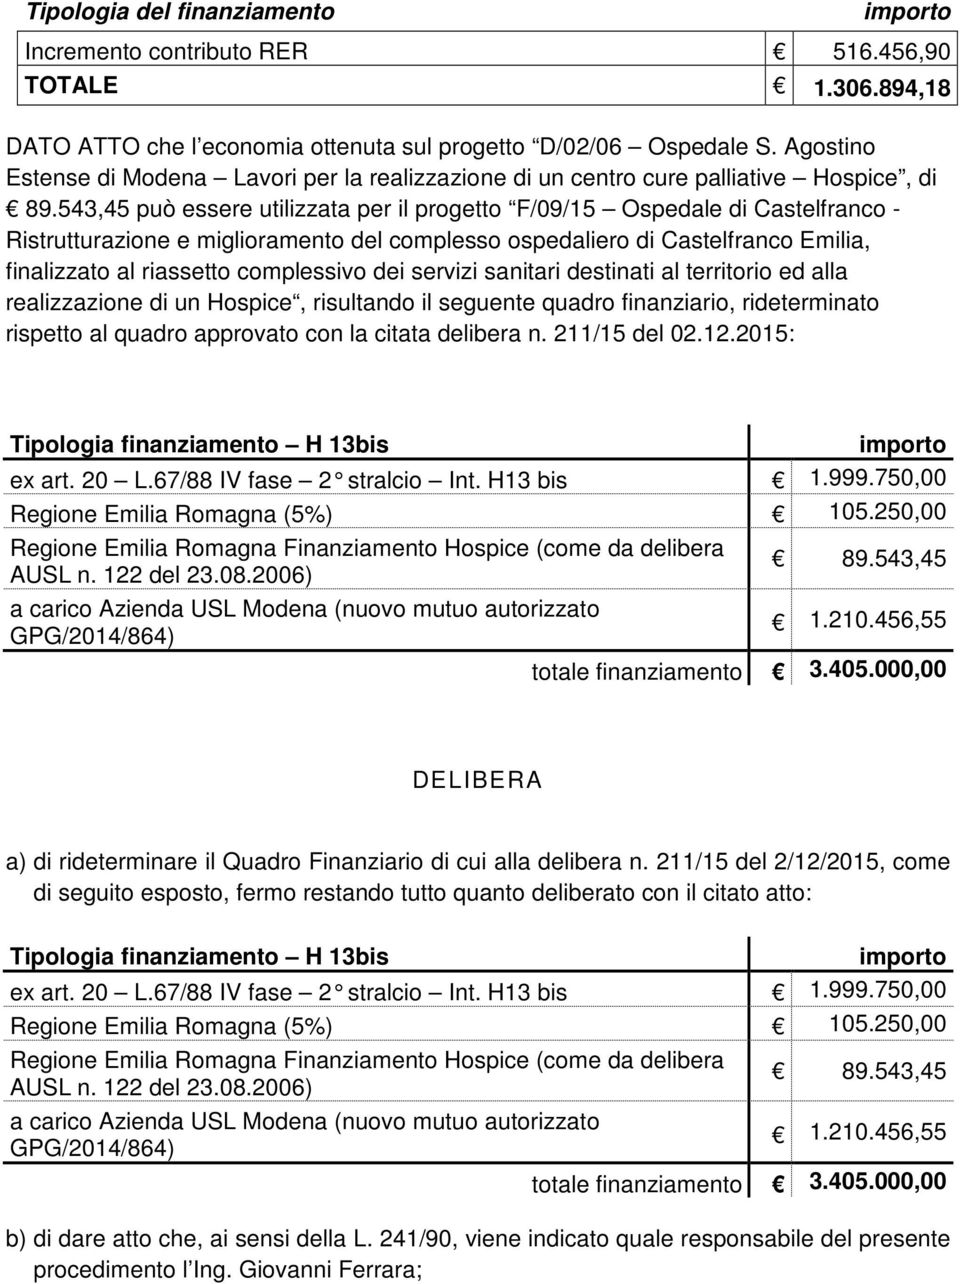 543,45 può essere utilizzata per il progetto F/09/15 Ospedale di Castelfranco - Ristrutturazione e miglioramento del complesso ospedaliero di Castelfranco Emilia, finalizzato al riassetto complessivo